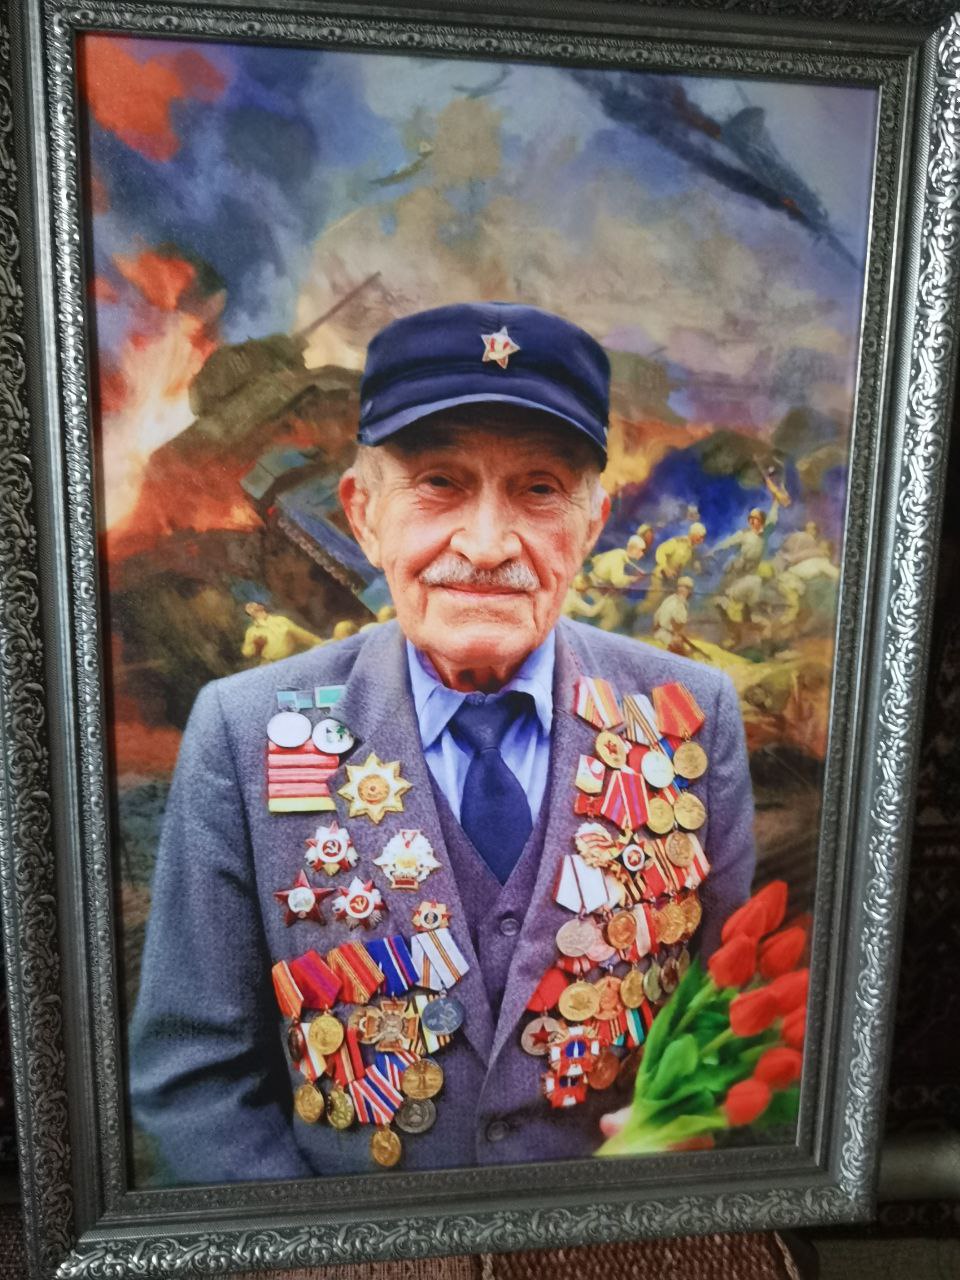 Сотрудники полиции и общественники поздравили ветерана Великой Отечественной войны и органов внутренних дел с 99-летием